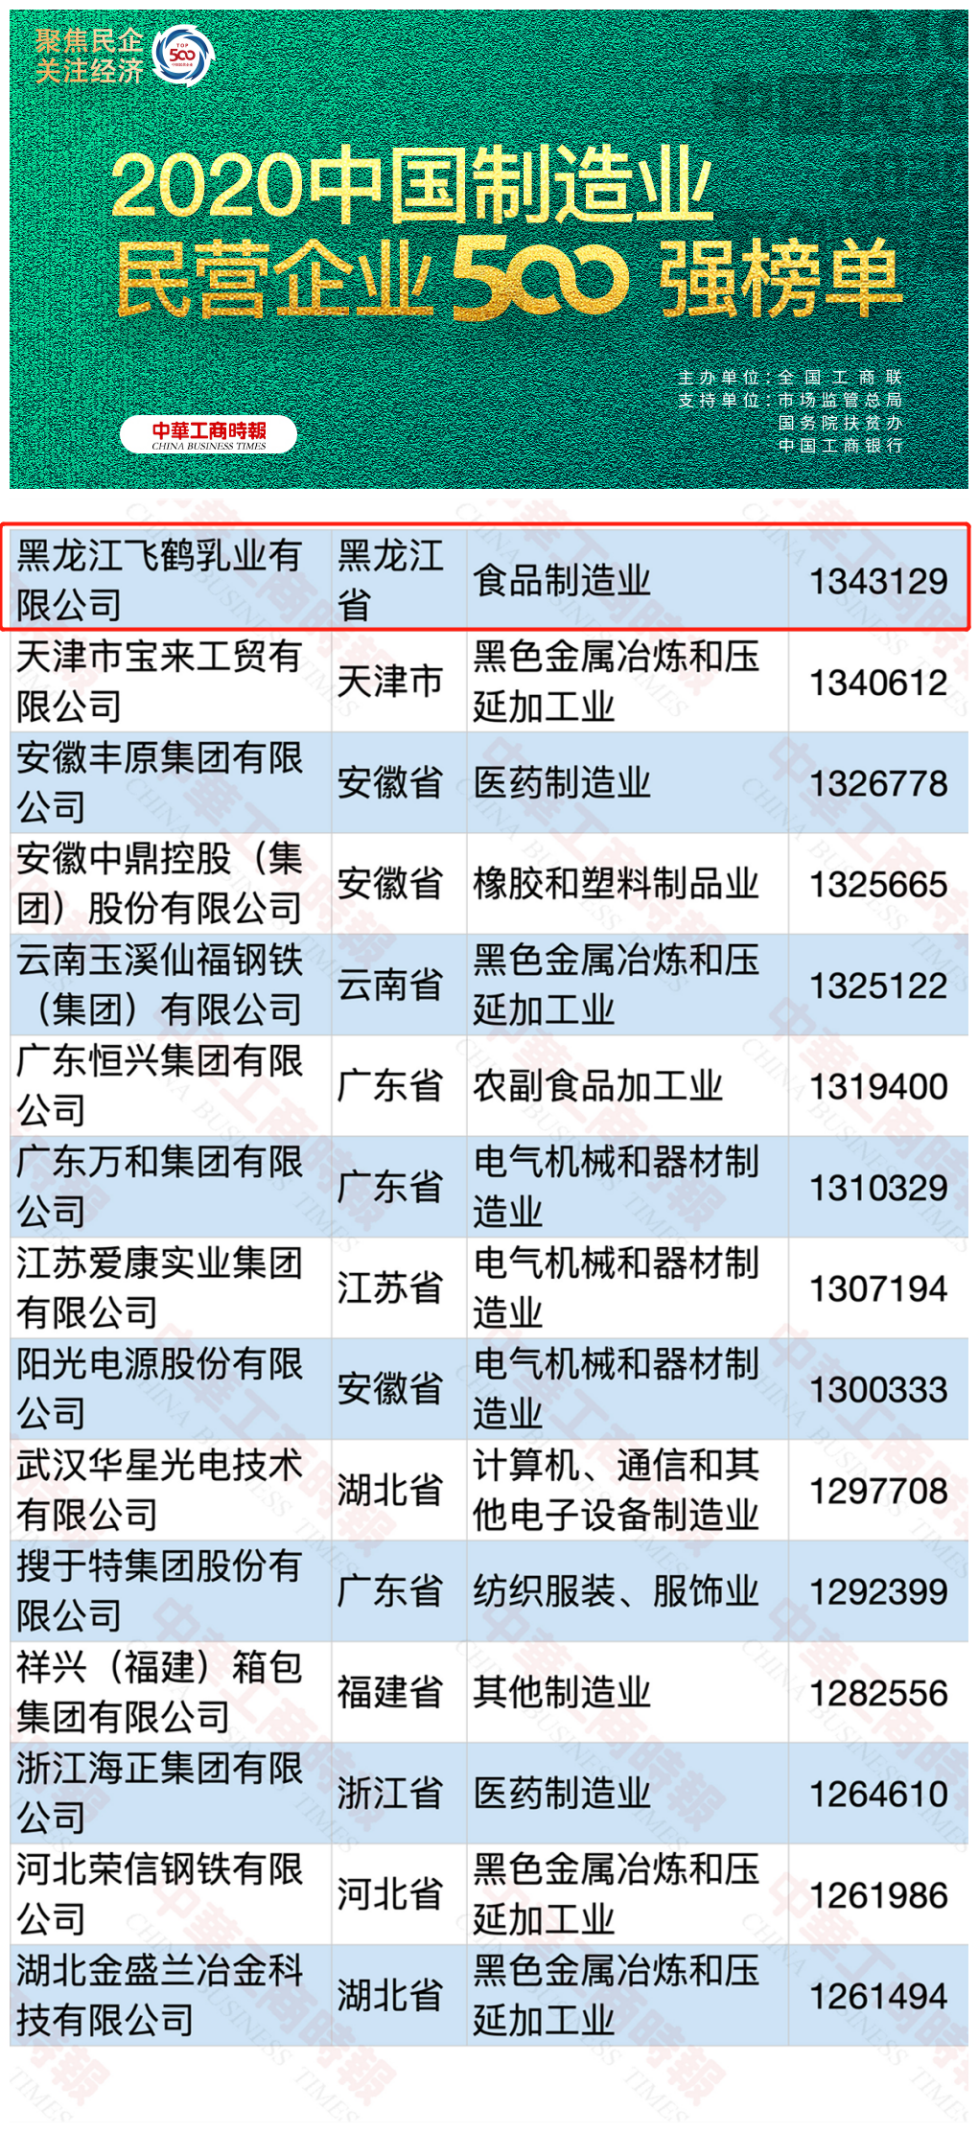 2020年中国民营企业500强榜单发布 中国飞鹤再创新高